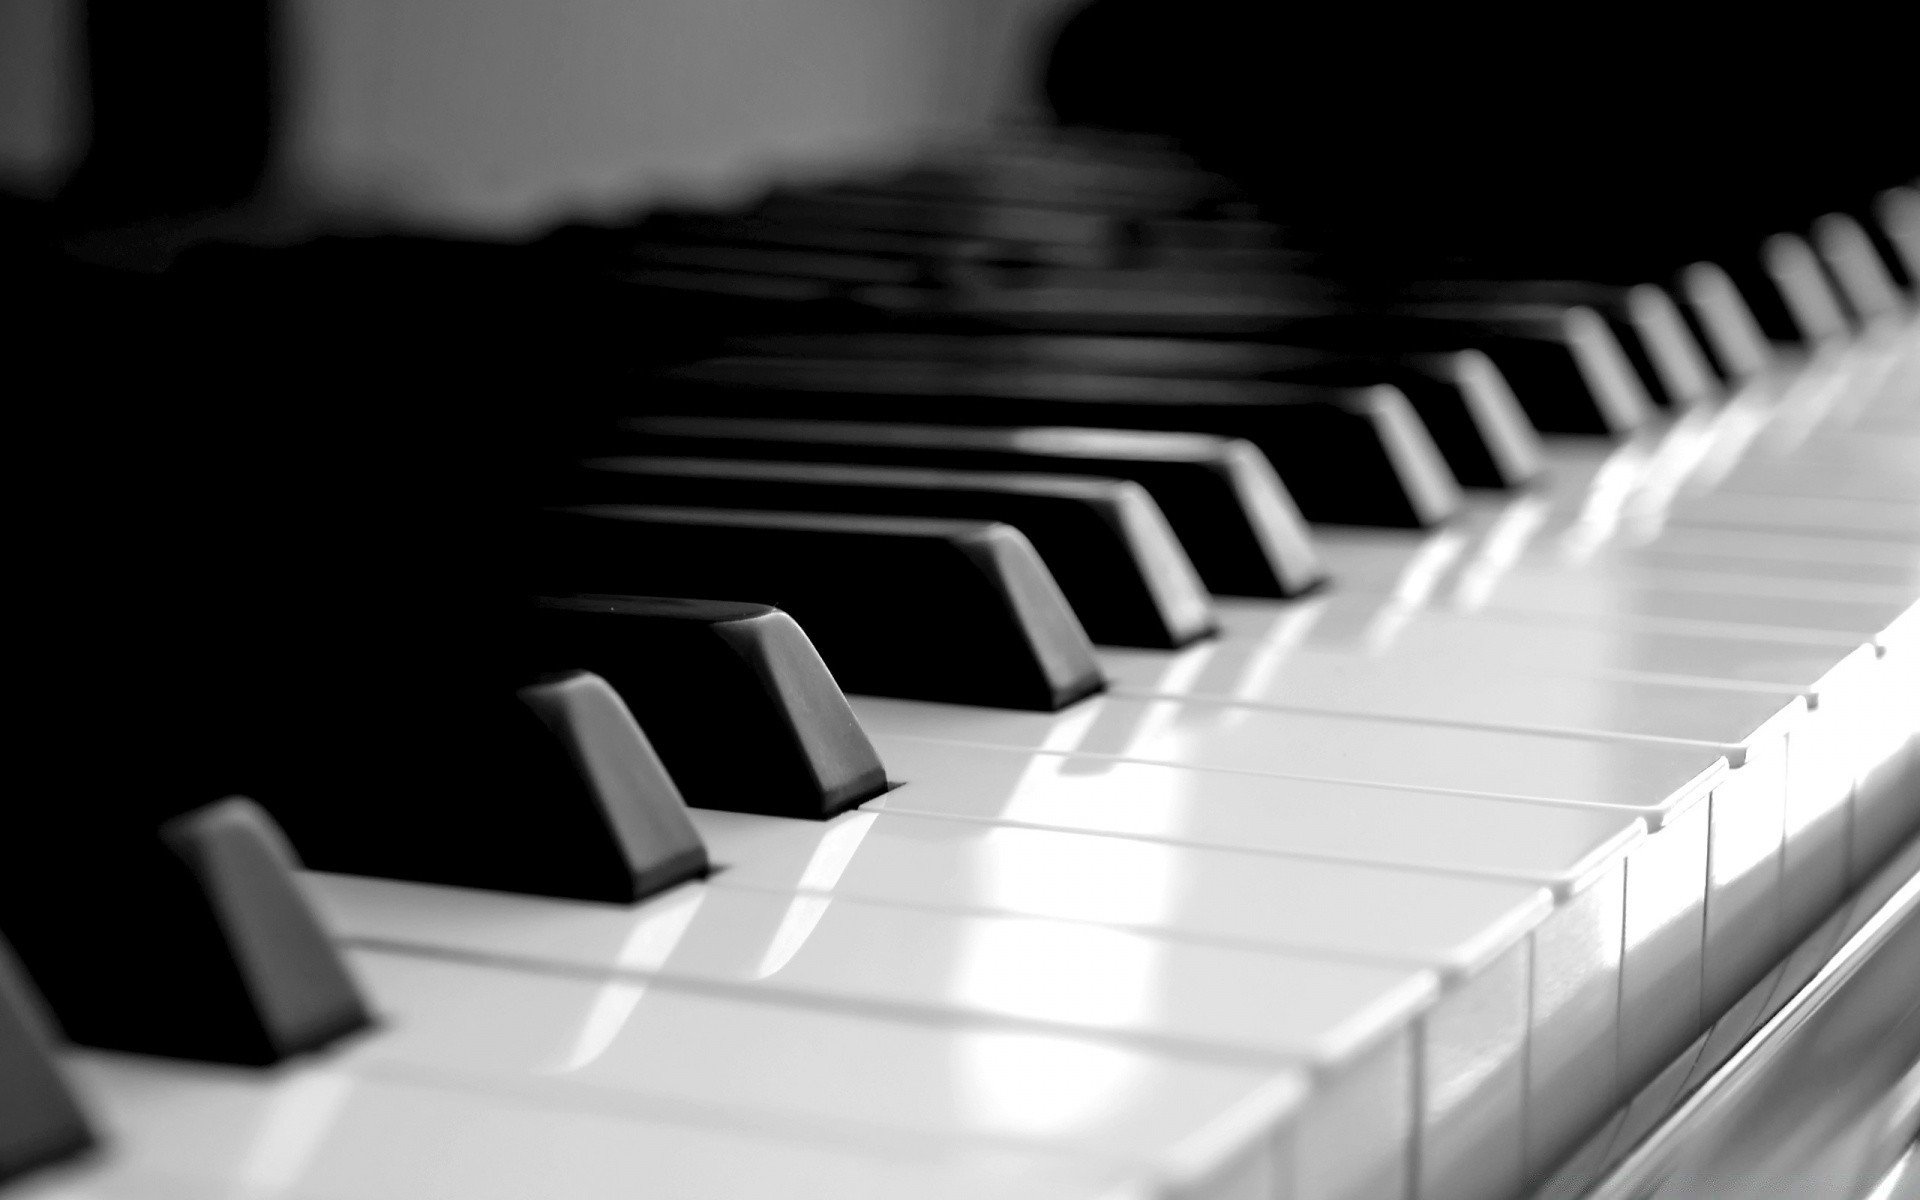 Клавиатура фортепиано фон